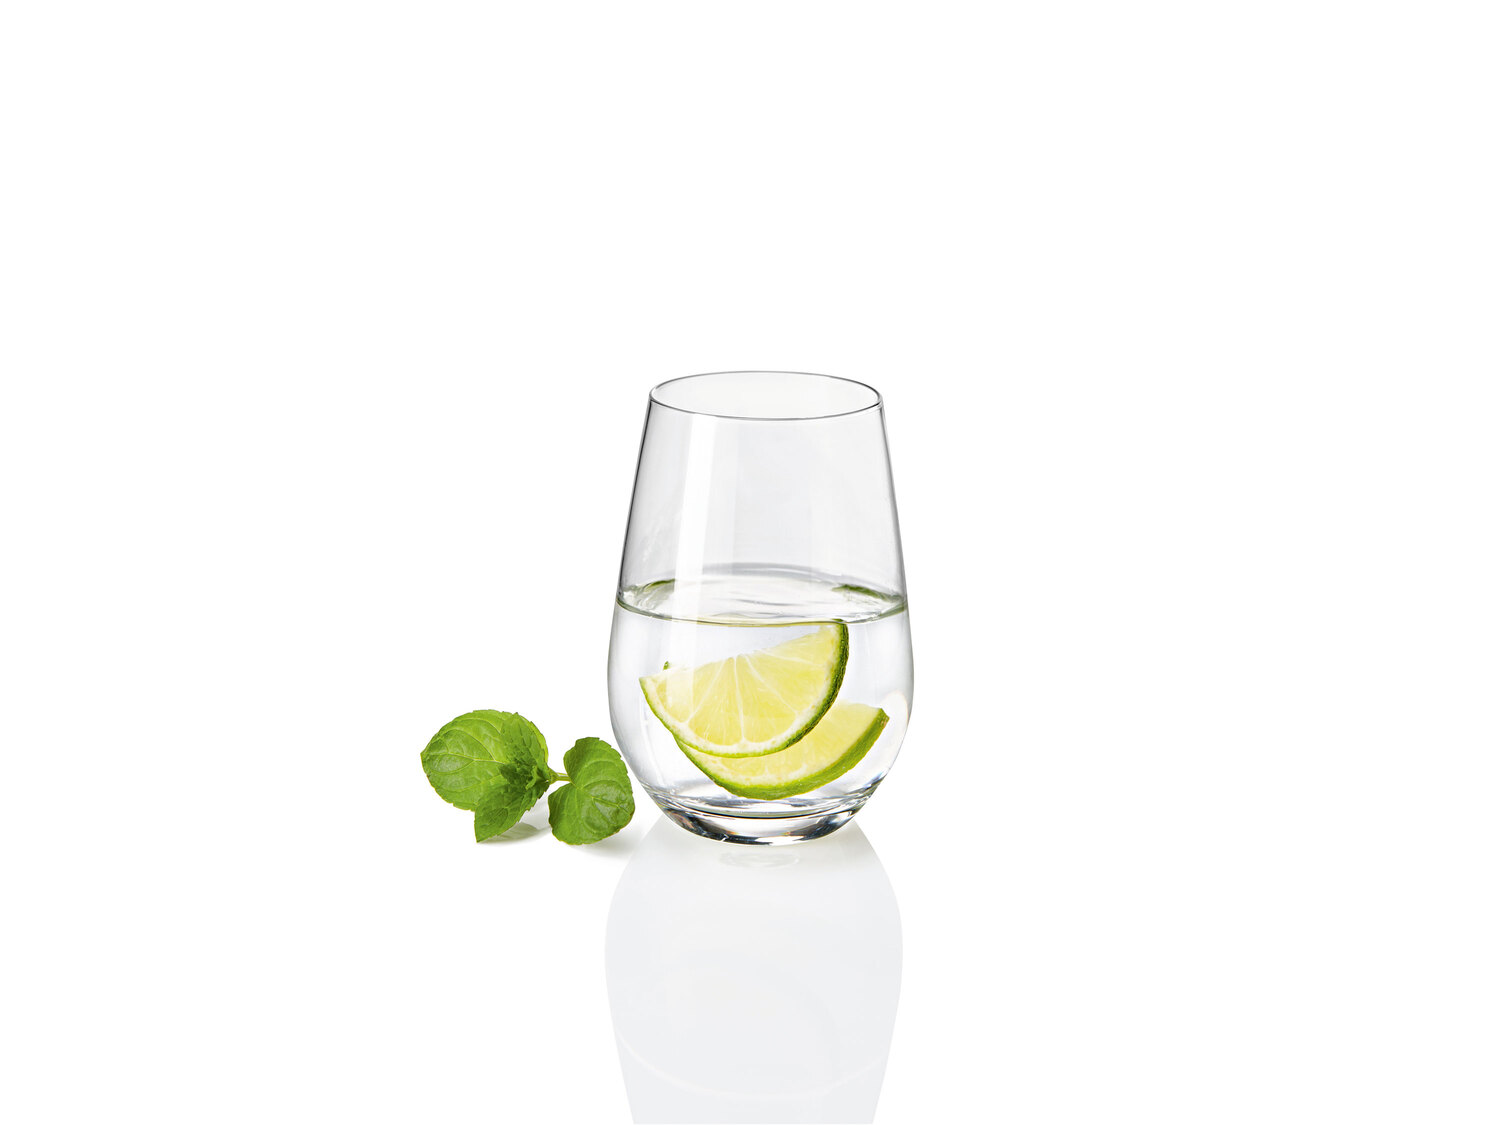 Zestaw 6 szklanek Ernesto, cena 34,99 PLN 
- wysokiej jakości szkło kryształowe
- ...